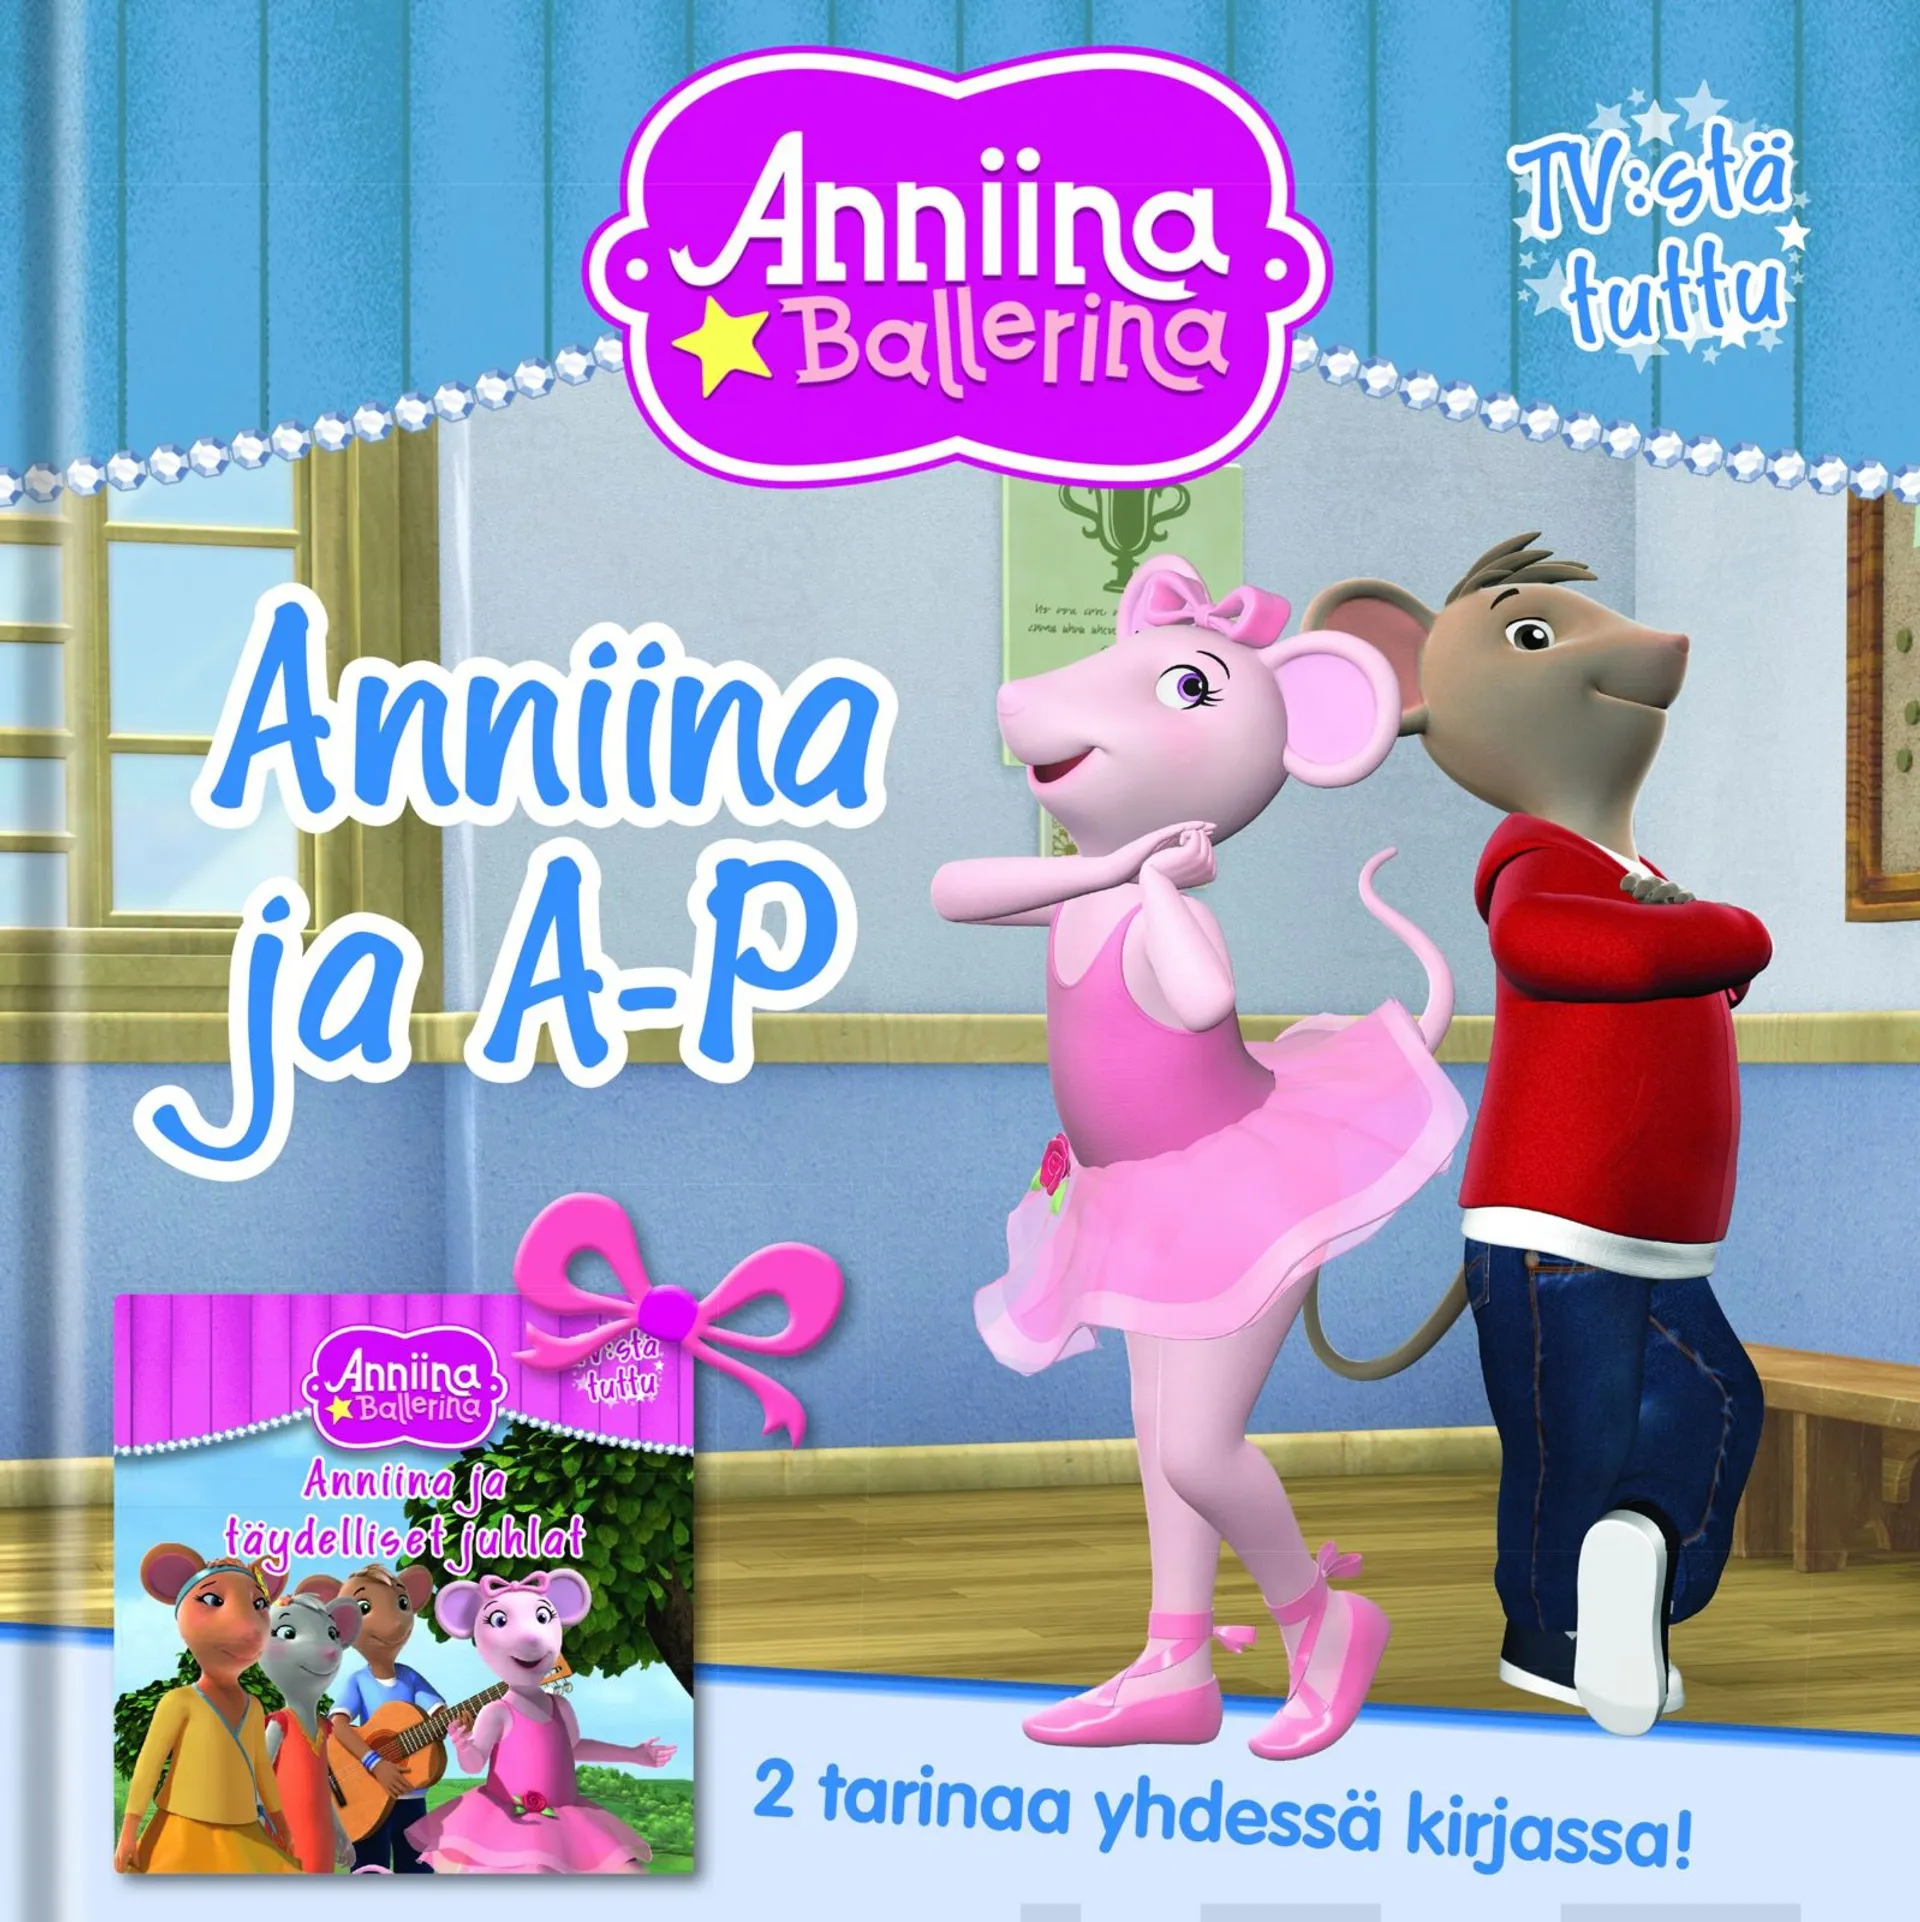 Anniina Balleriina - Anniina ja A-P ja Anniina ja täydelliset juhlat